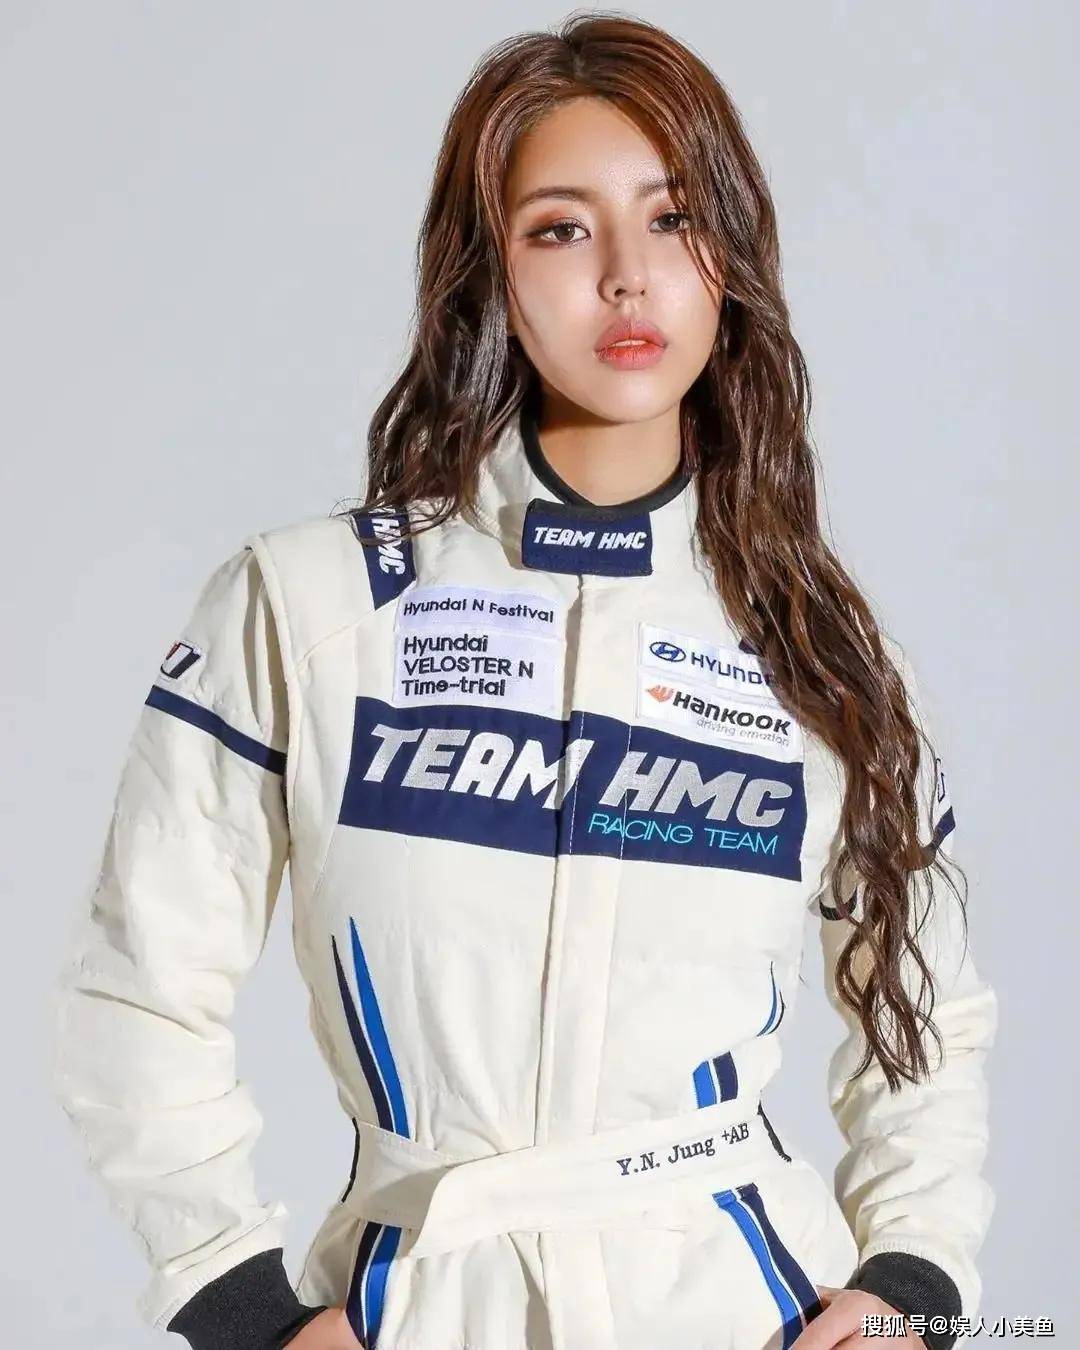 原创 韩国美女赛车手,长相魅惑身材火辣,被称为"性感小野猫"